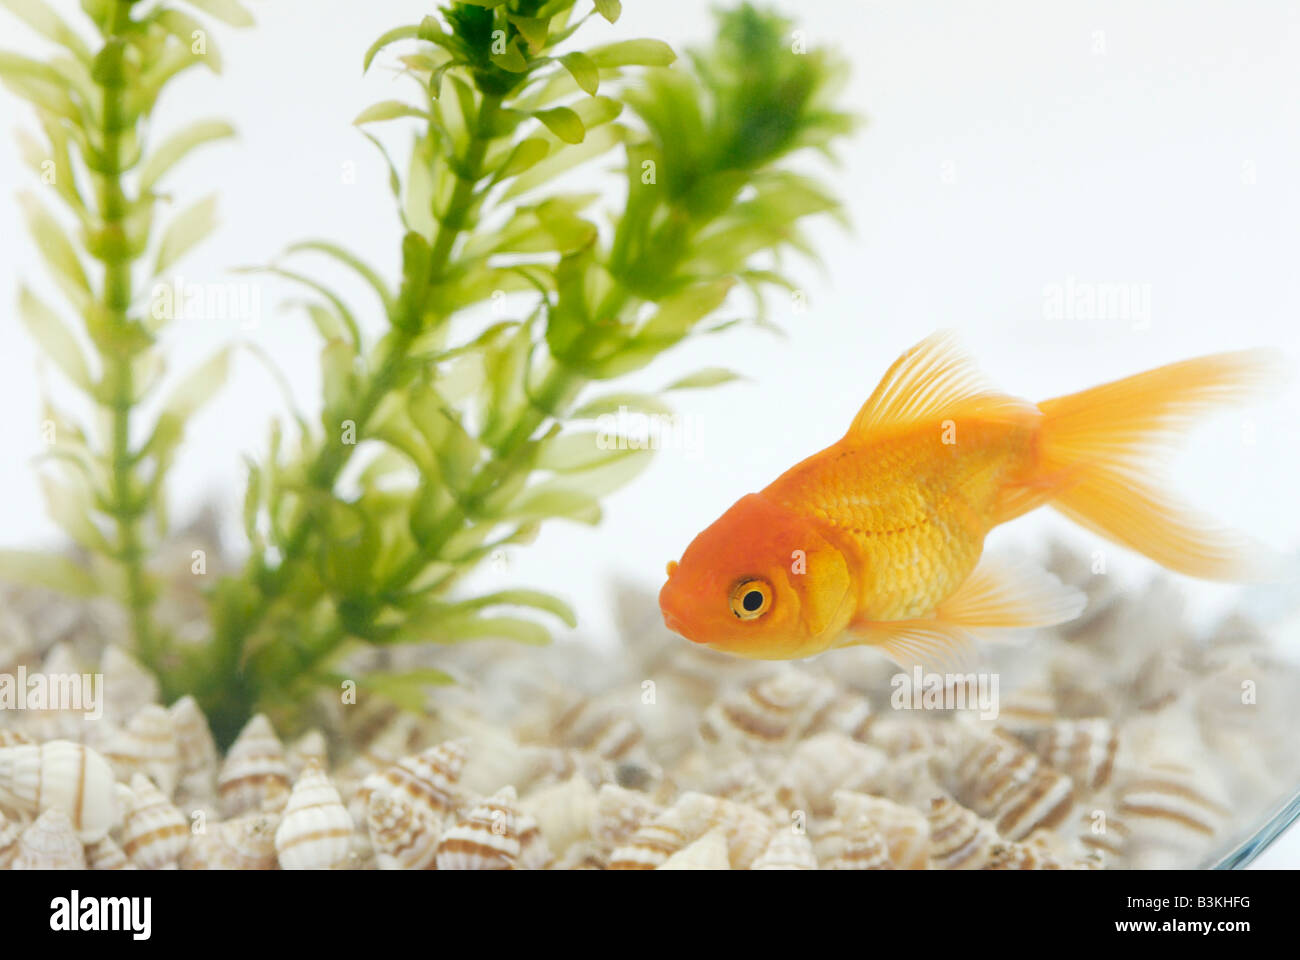 Un fantailed goldfish Carassius auratus vivant dans un bol avec une plante aquatique Elodea Banque D'Images